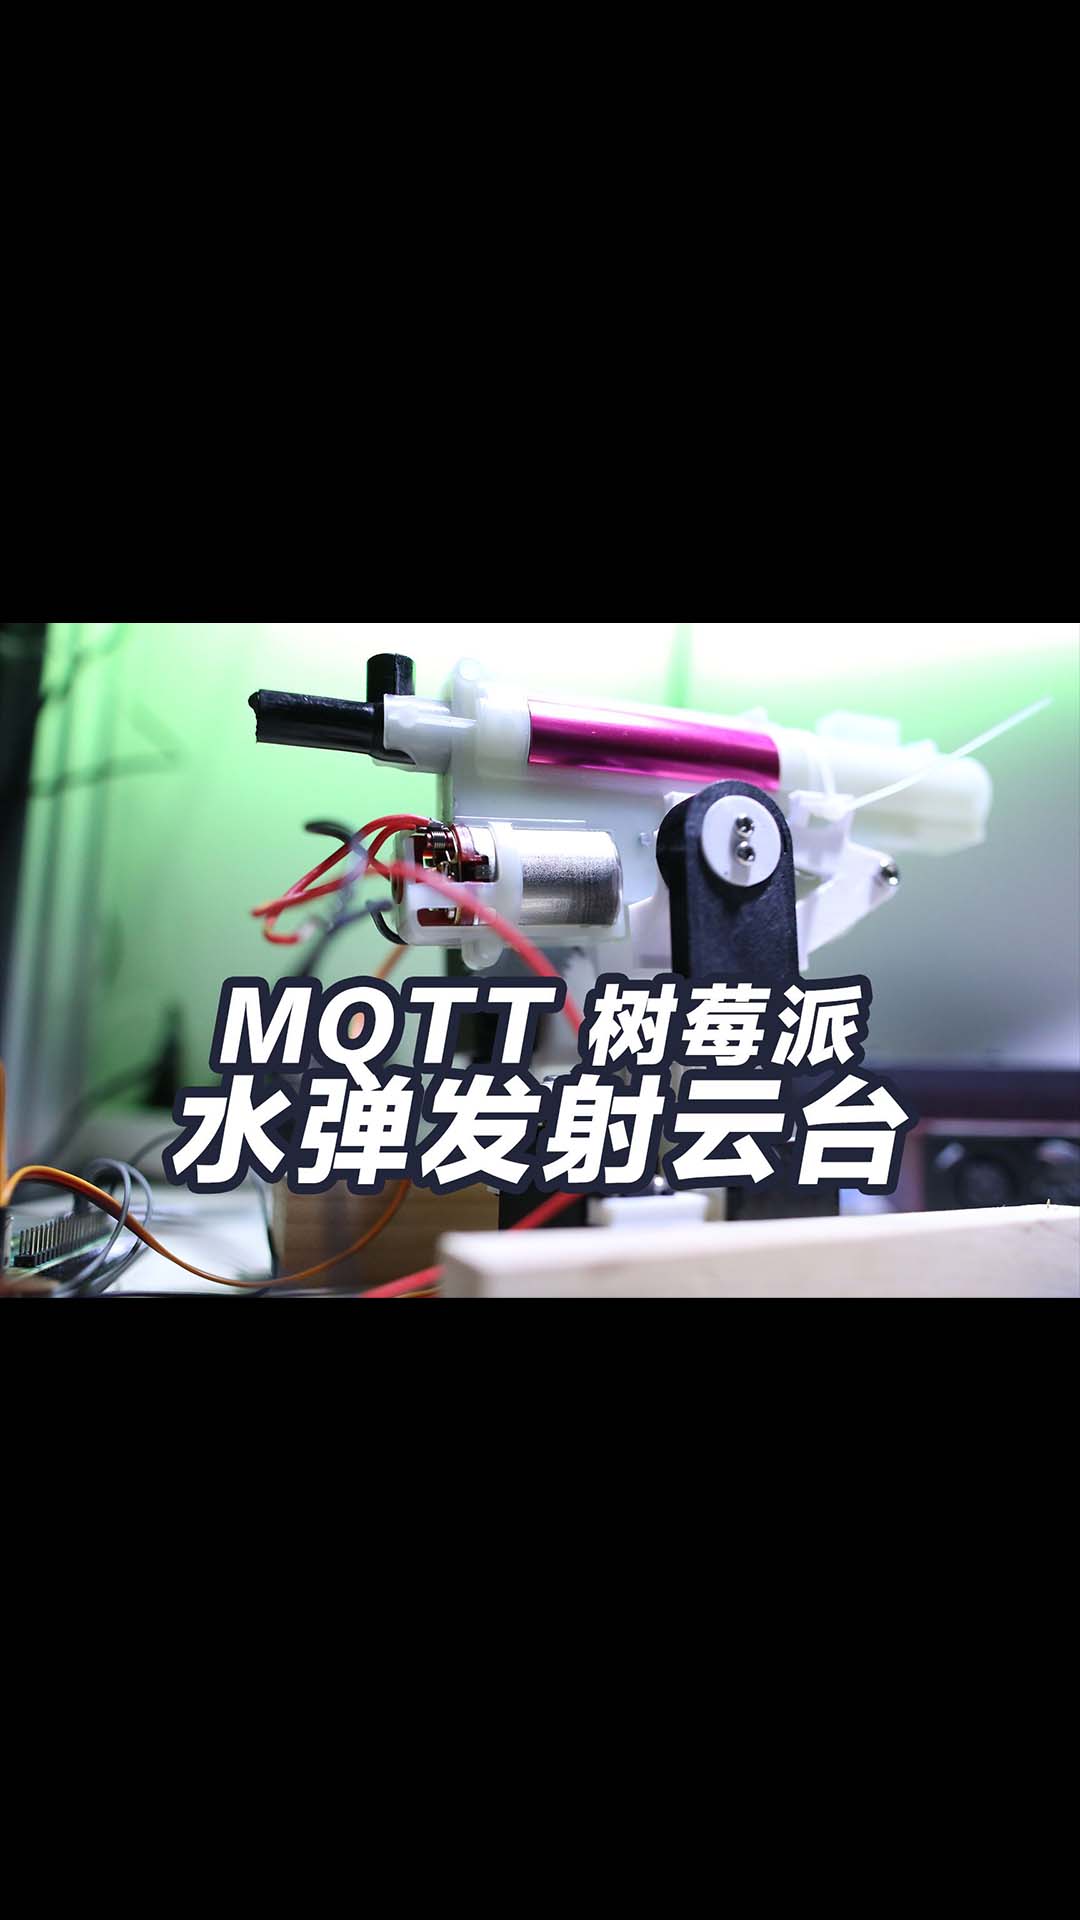 水彈發射器云臺用樹莓派和MQTT做4G遙控車 3D打印云臺 手機4G控制